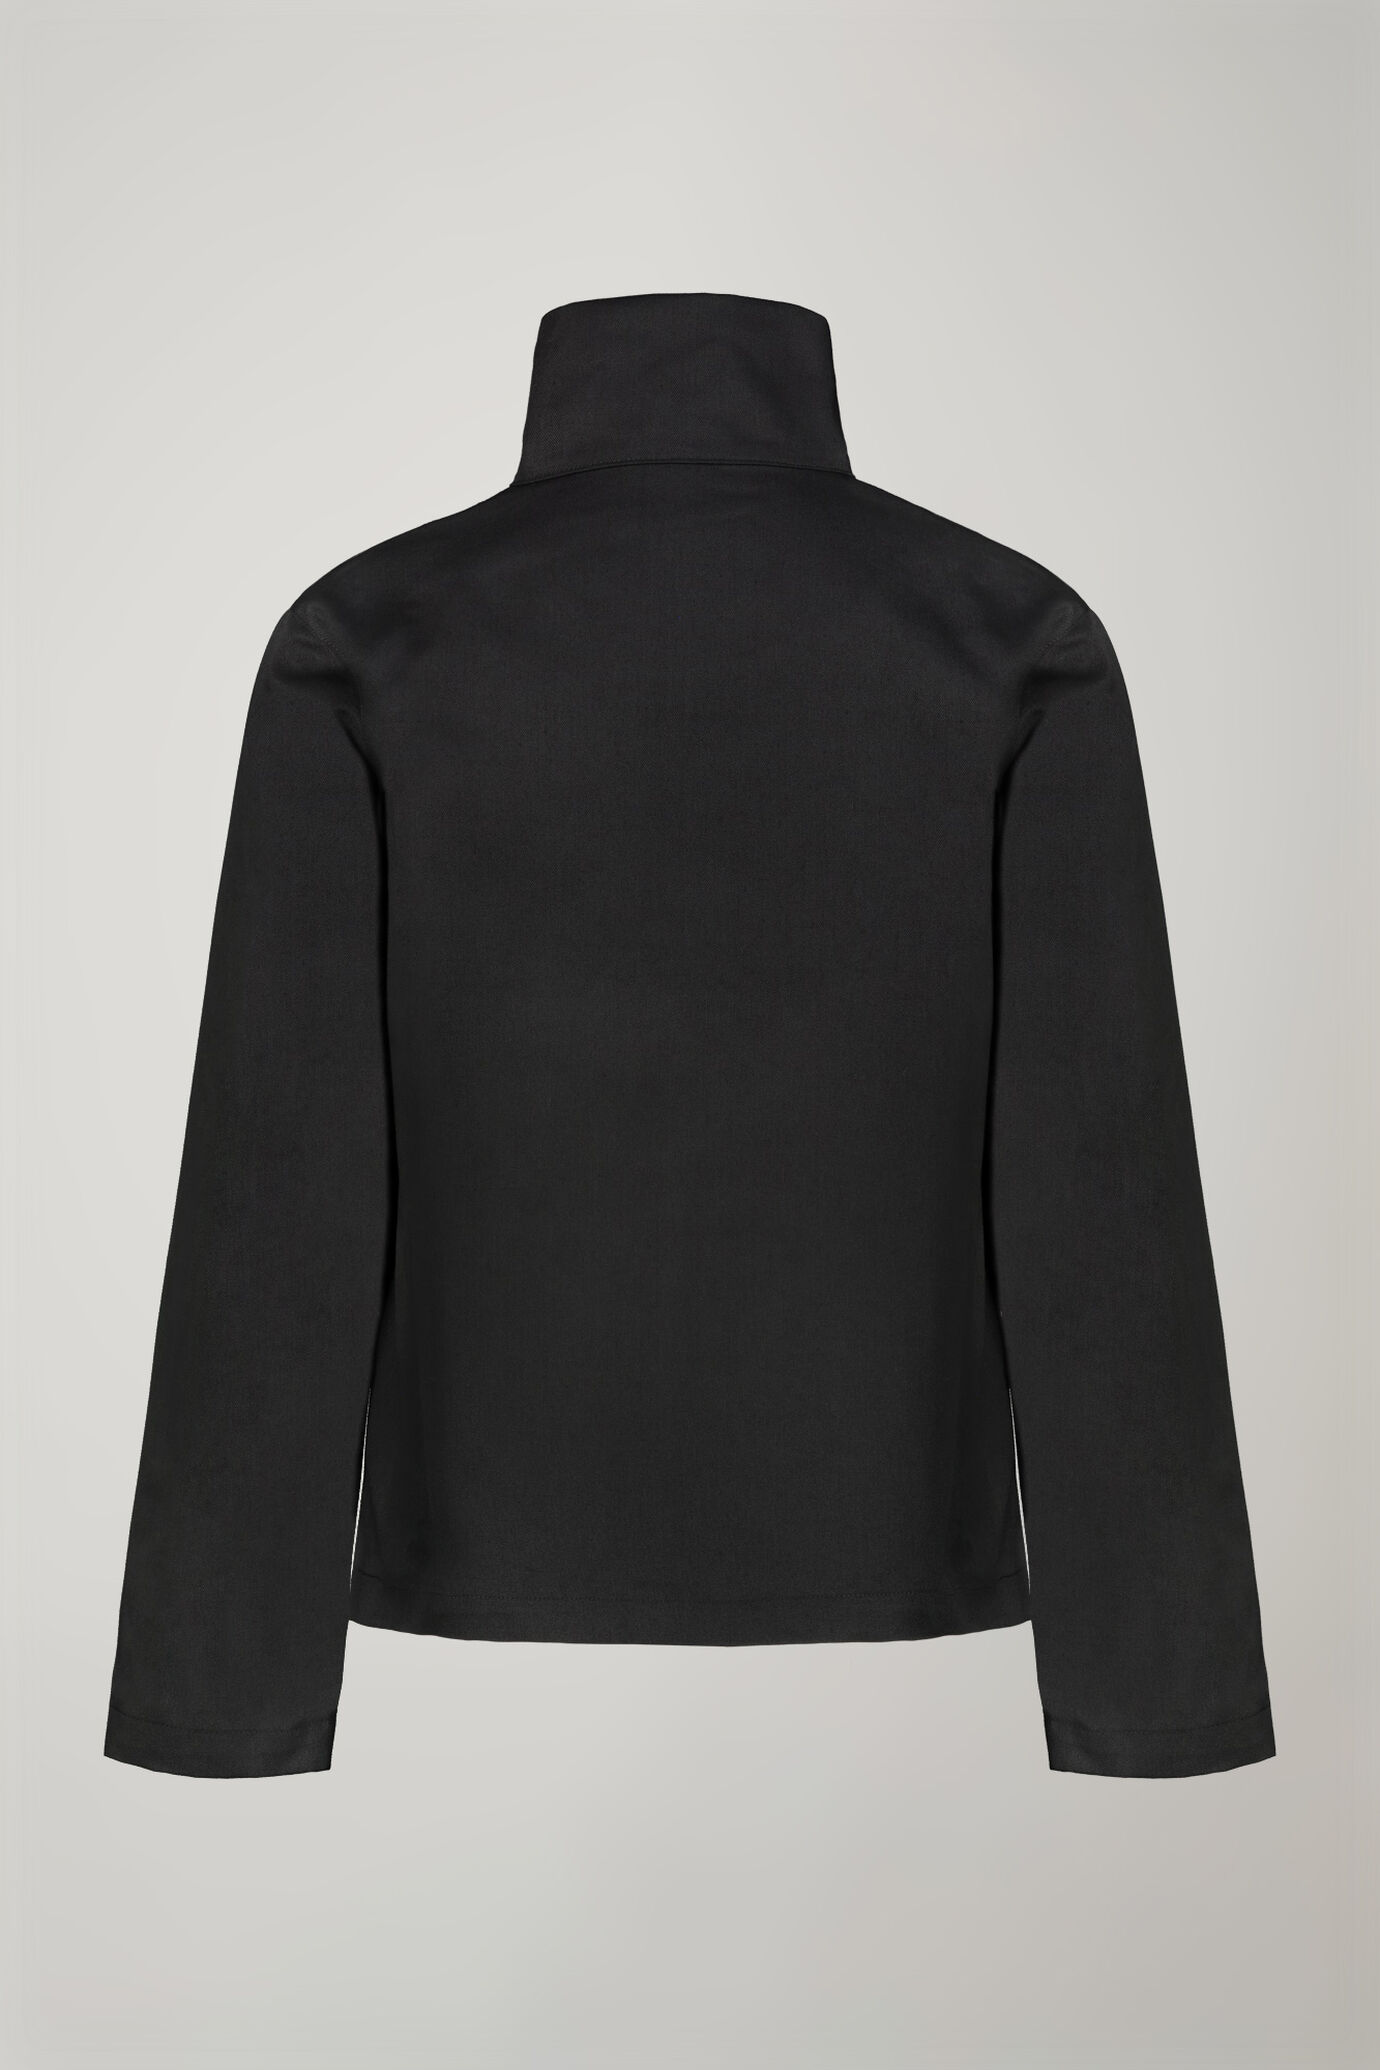 Women's jacket with zip regular fit image number 5